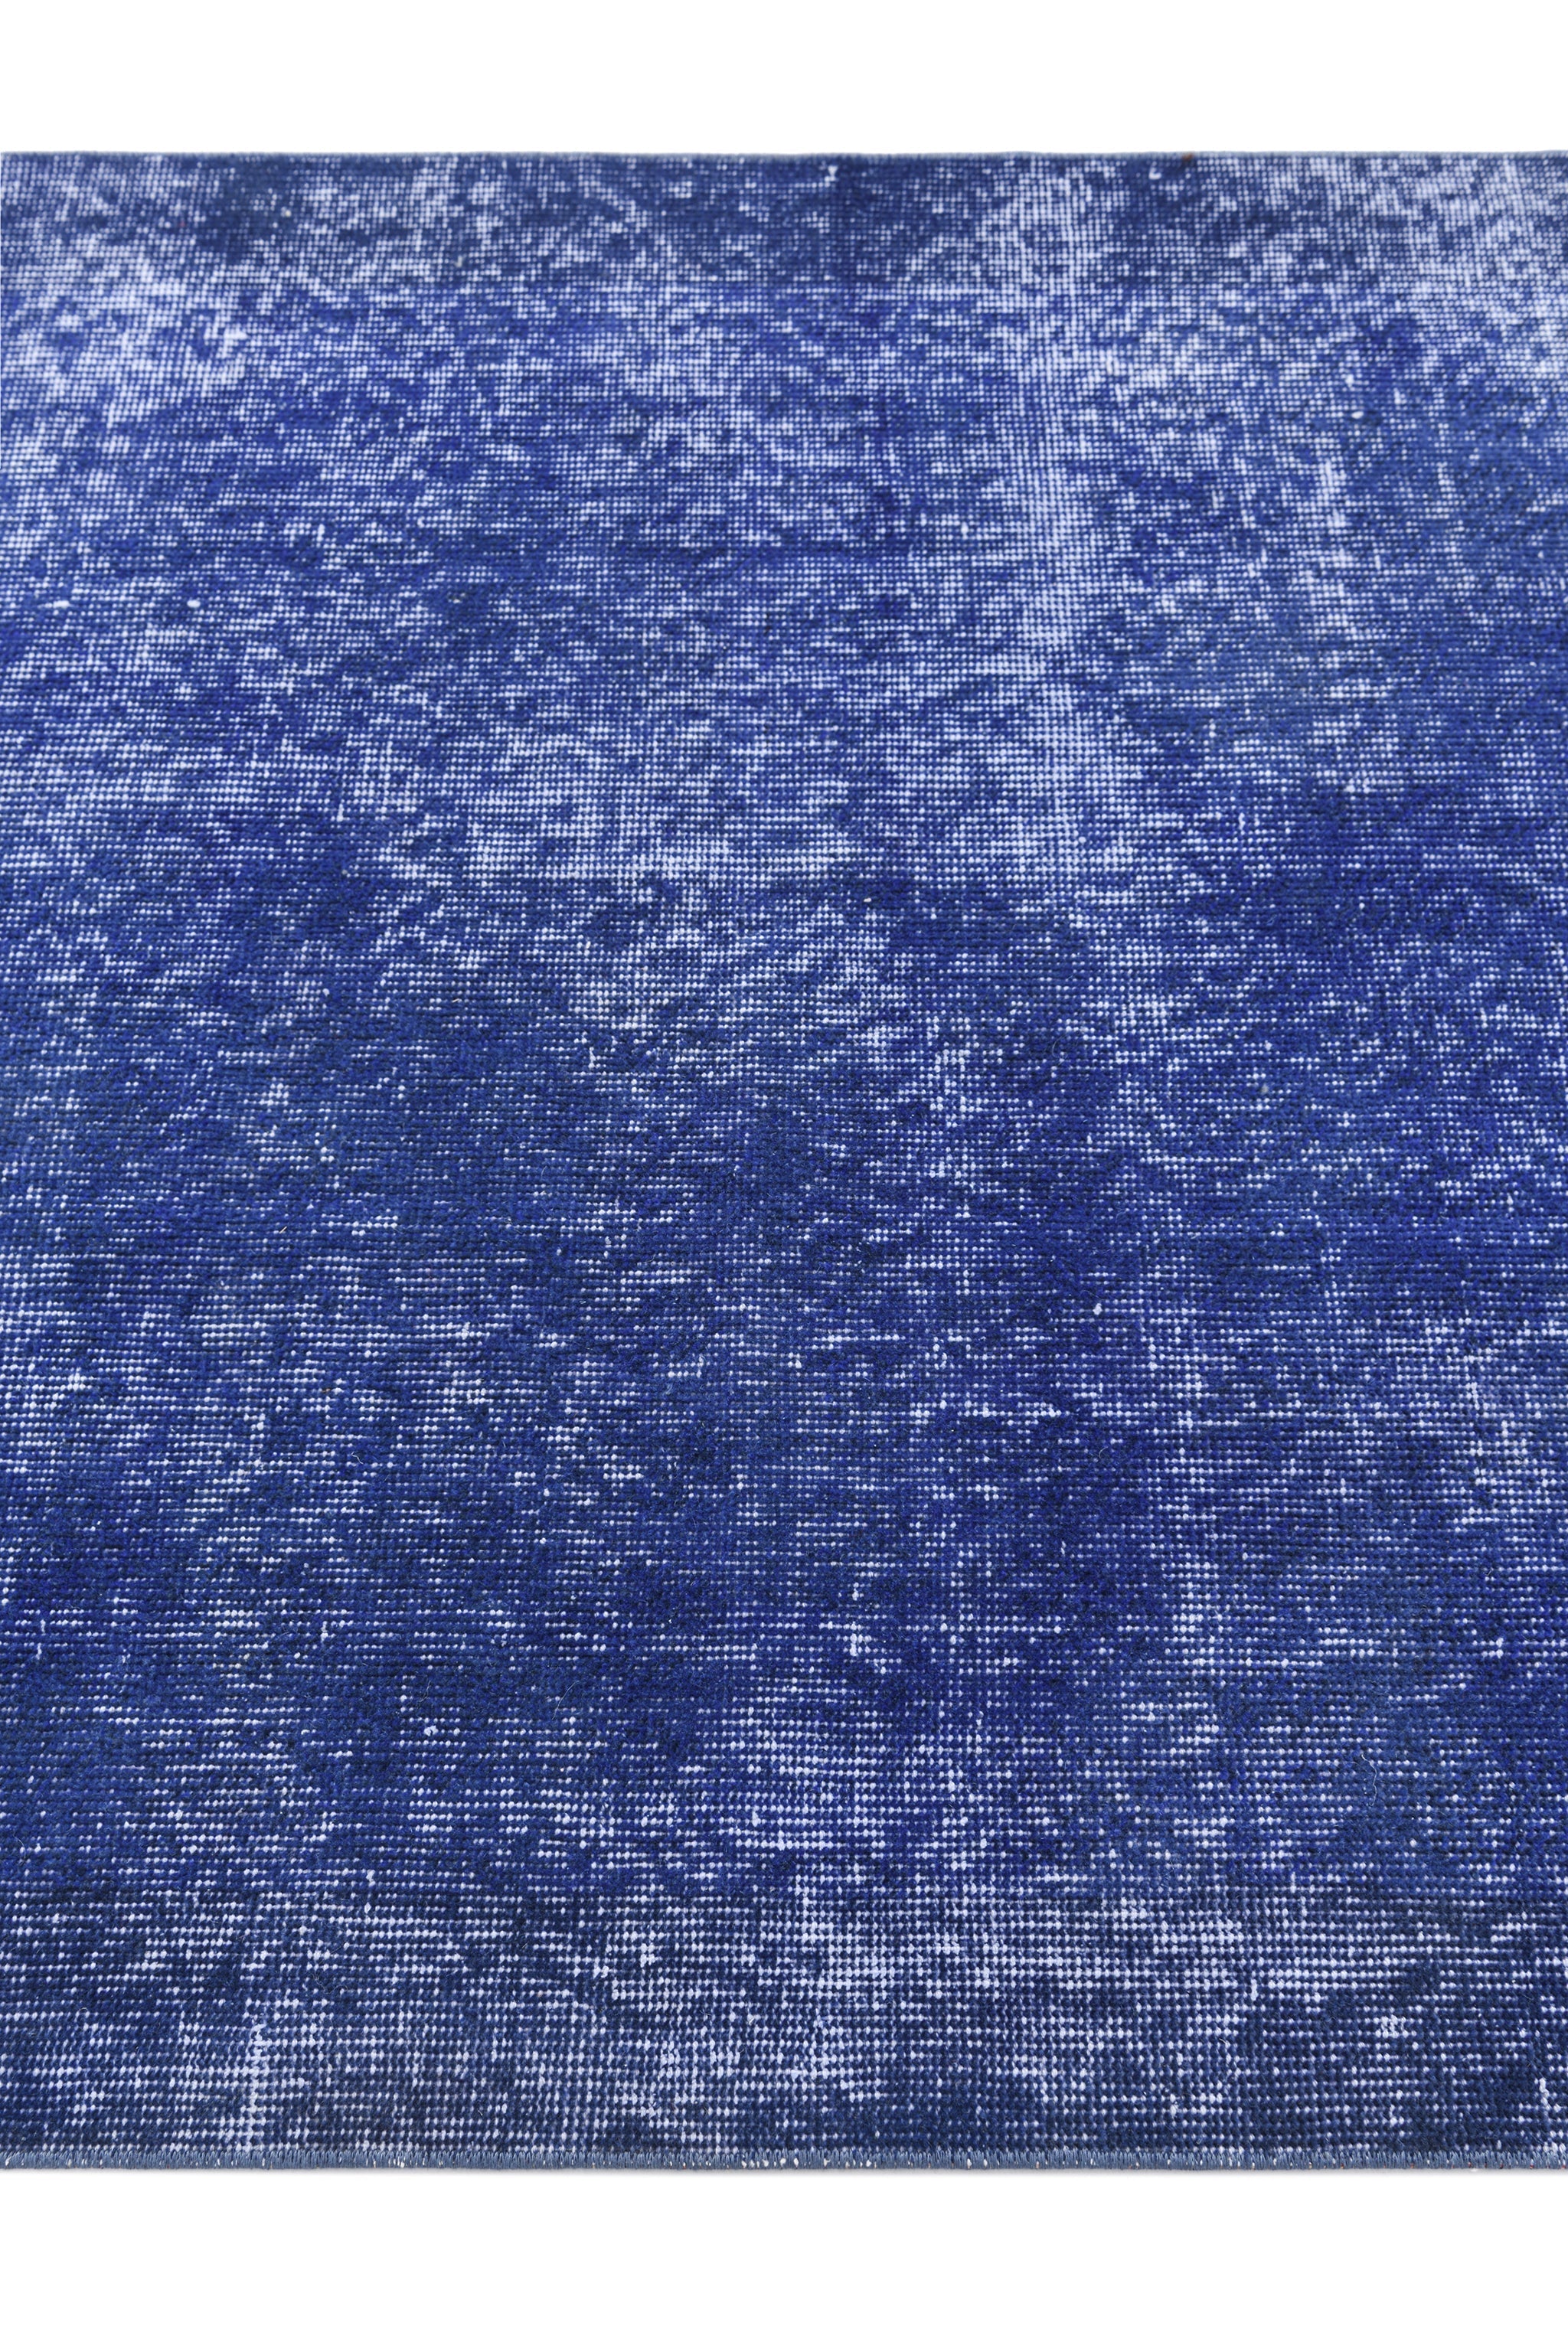 175x99 Ultra Vintage in Blau präsentiert im Onlineshop von KAQTU Design AG. Teppich ist von Vidal